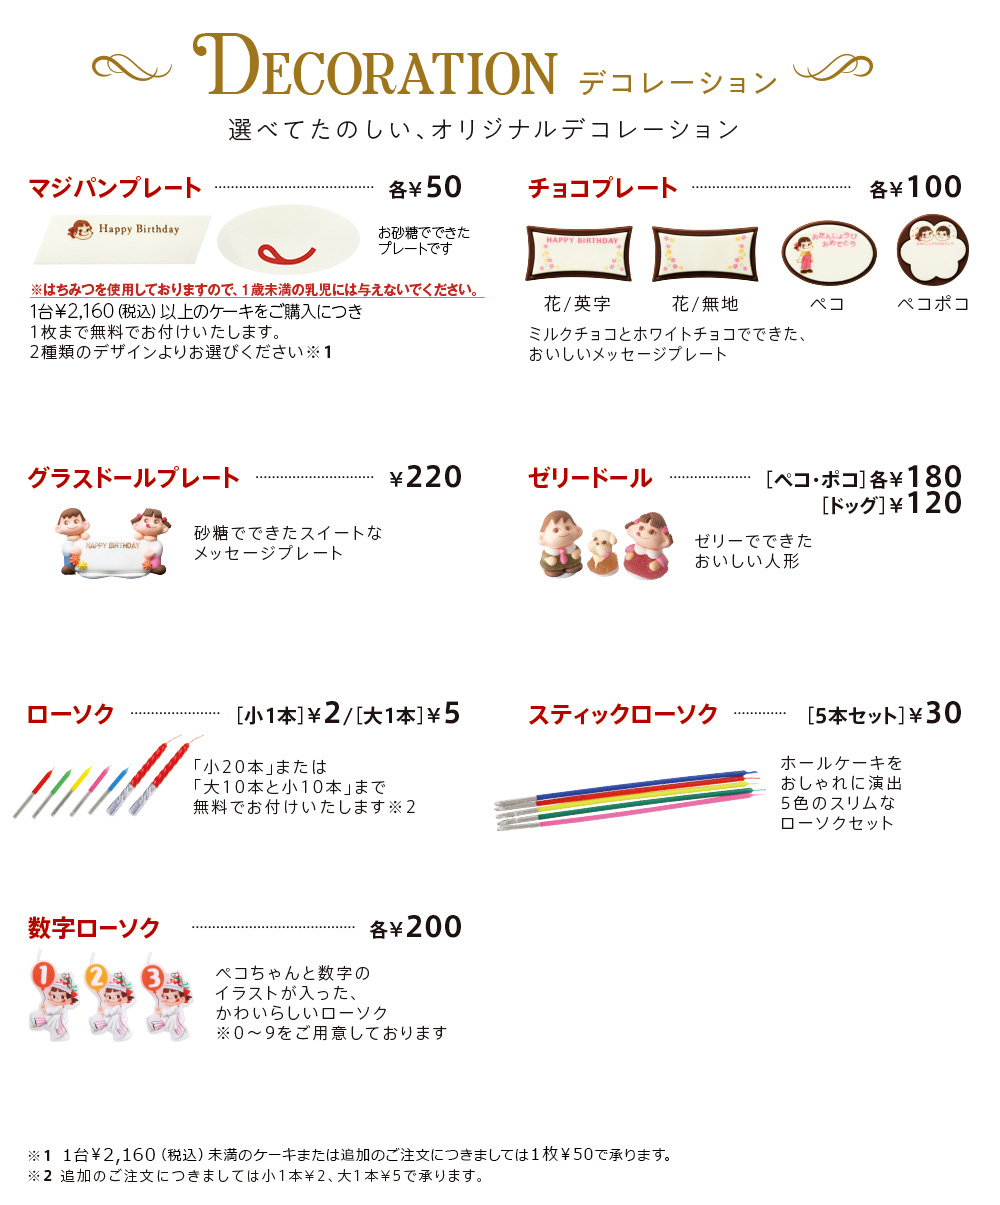 DECORATION 選べてたのしい、オリジナルデコレーション マジパンプレート各¥50 1台￥2,160（税込）以上のケーキをご購入につき1枚まで無料でお付けいたします。
							2種類のデザインよりお選びください※1 チョコプレート各¥100 花/英字 花/無地 ペコ ペコポコ ミルクチョコとホワイトチョコでできた、おいしいメッセージプレート グラスドールプレート¥220 砂糖でできたスイートなメッセージプレート ゼリードール［ペコ・ポコ］各¥180［ドッグ］¥120 ゼリーでできたおいしい人形 ローソク［小1本］¥2/［大1本］¥5 「小20本」または「大10本と小10本」まで無料でお付けいたします※2 スティックローソク［5本セット］￥30 ホールケーキをおしゃれに演出5色のスリムなローソクセット 数字ローソク各¥200 ペコちゃんと数字のイラストが入った、かわいらしいローソク※0〜9をご用意しております　※1 1台￥2,160（税込）未満のケーキまたは追加のご注文につきましては1枚¥50で承ります。※2 追加のご注文につきましては小1本¥2、大1本¥5で承ります。